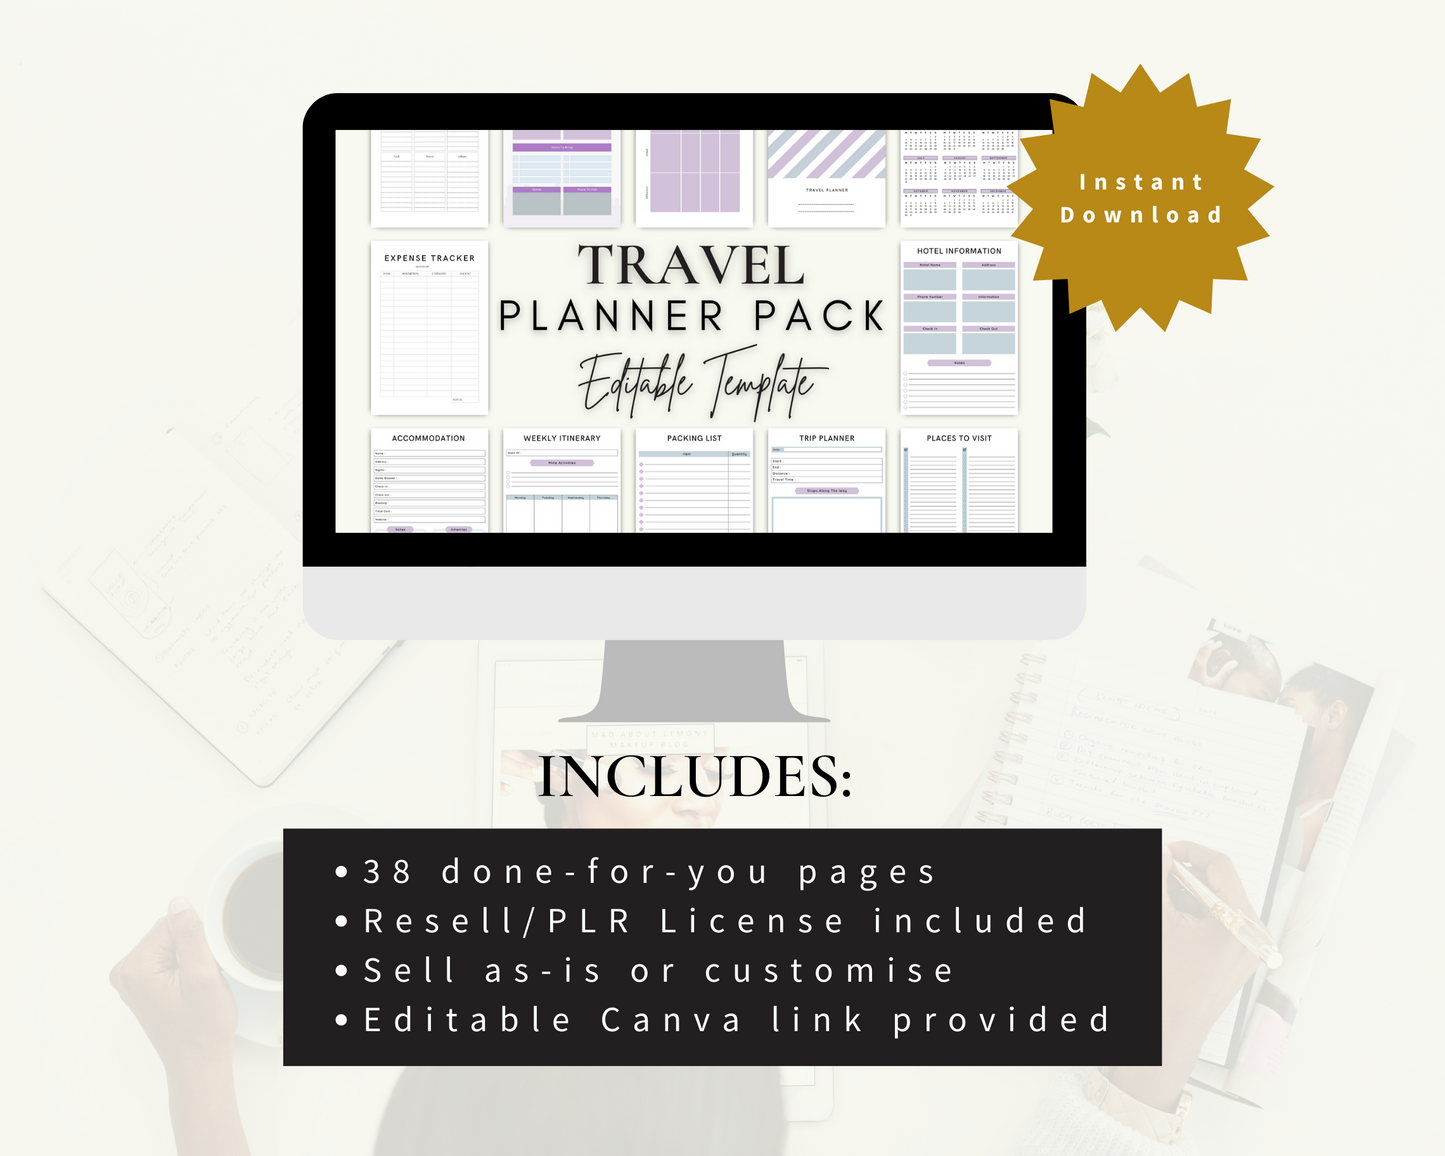 Travel Planner Pack